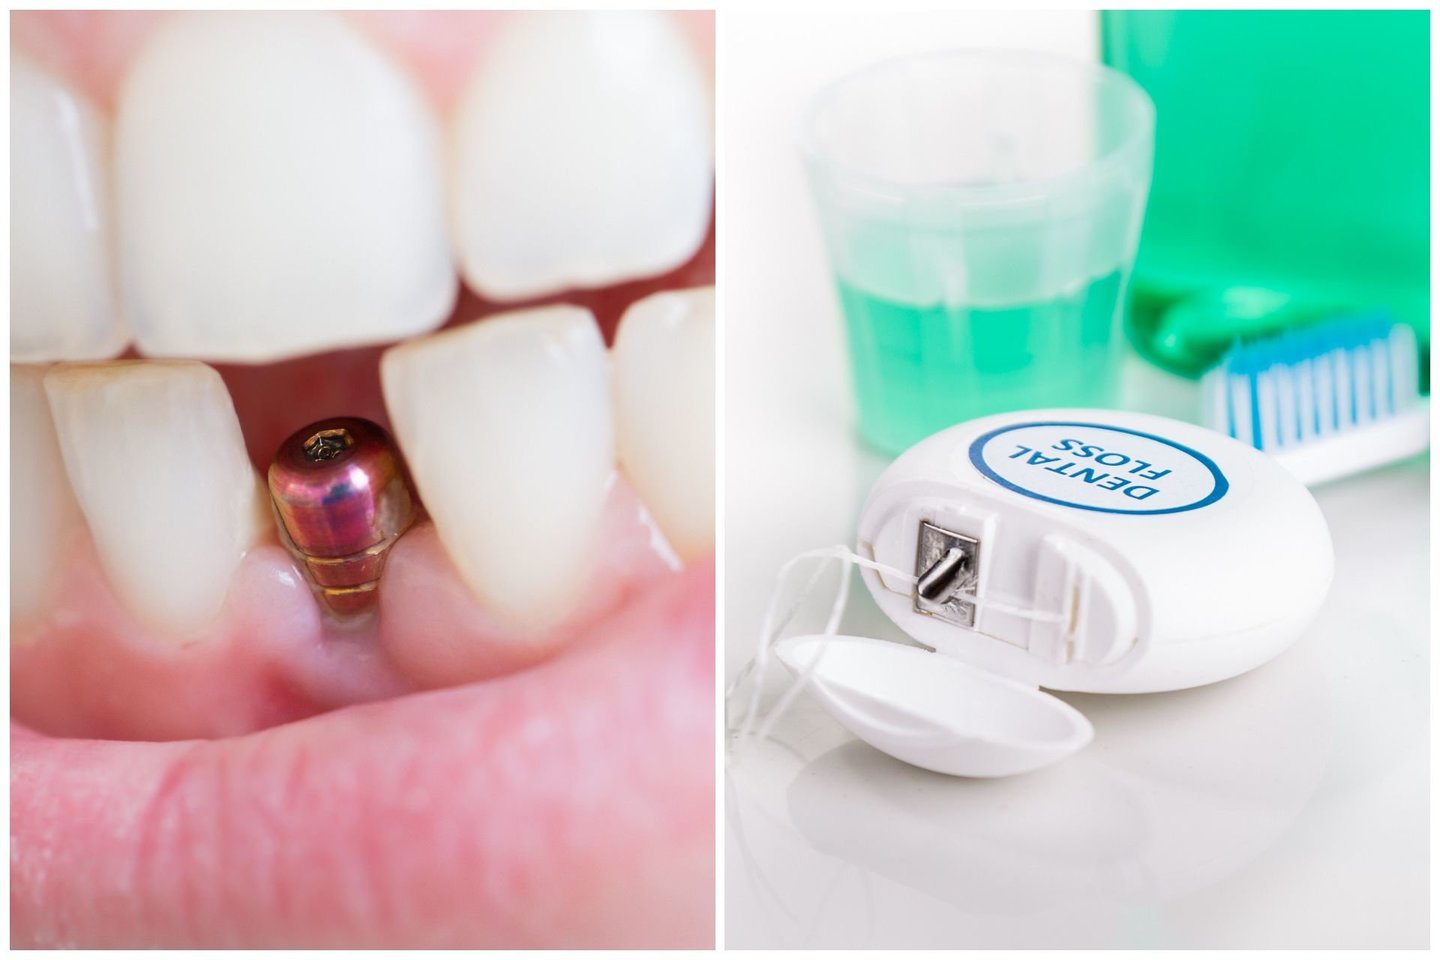 Turintiems dantų implantų ar karūnėlių ypač atsargiai reikėtų naudotis tarpdančių siūlu – geriausia vietoj jo rinktis irigatorių.<br> 123rf nuotr.